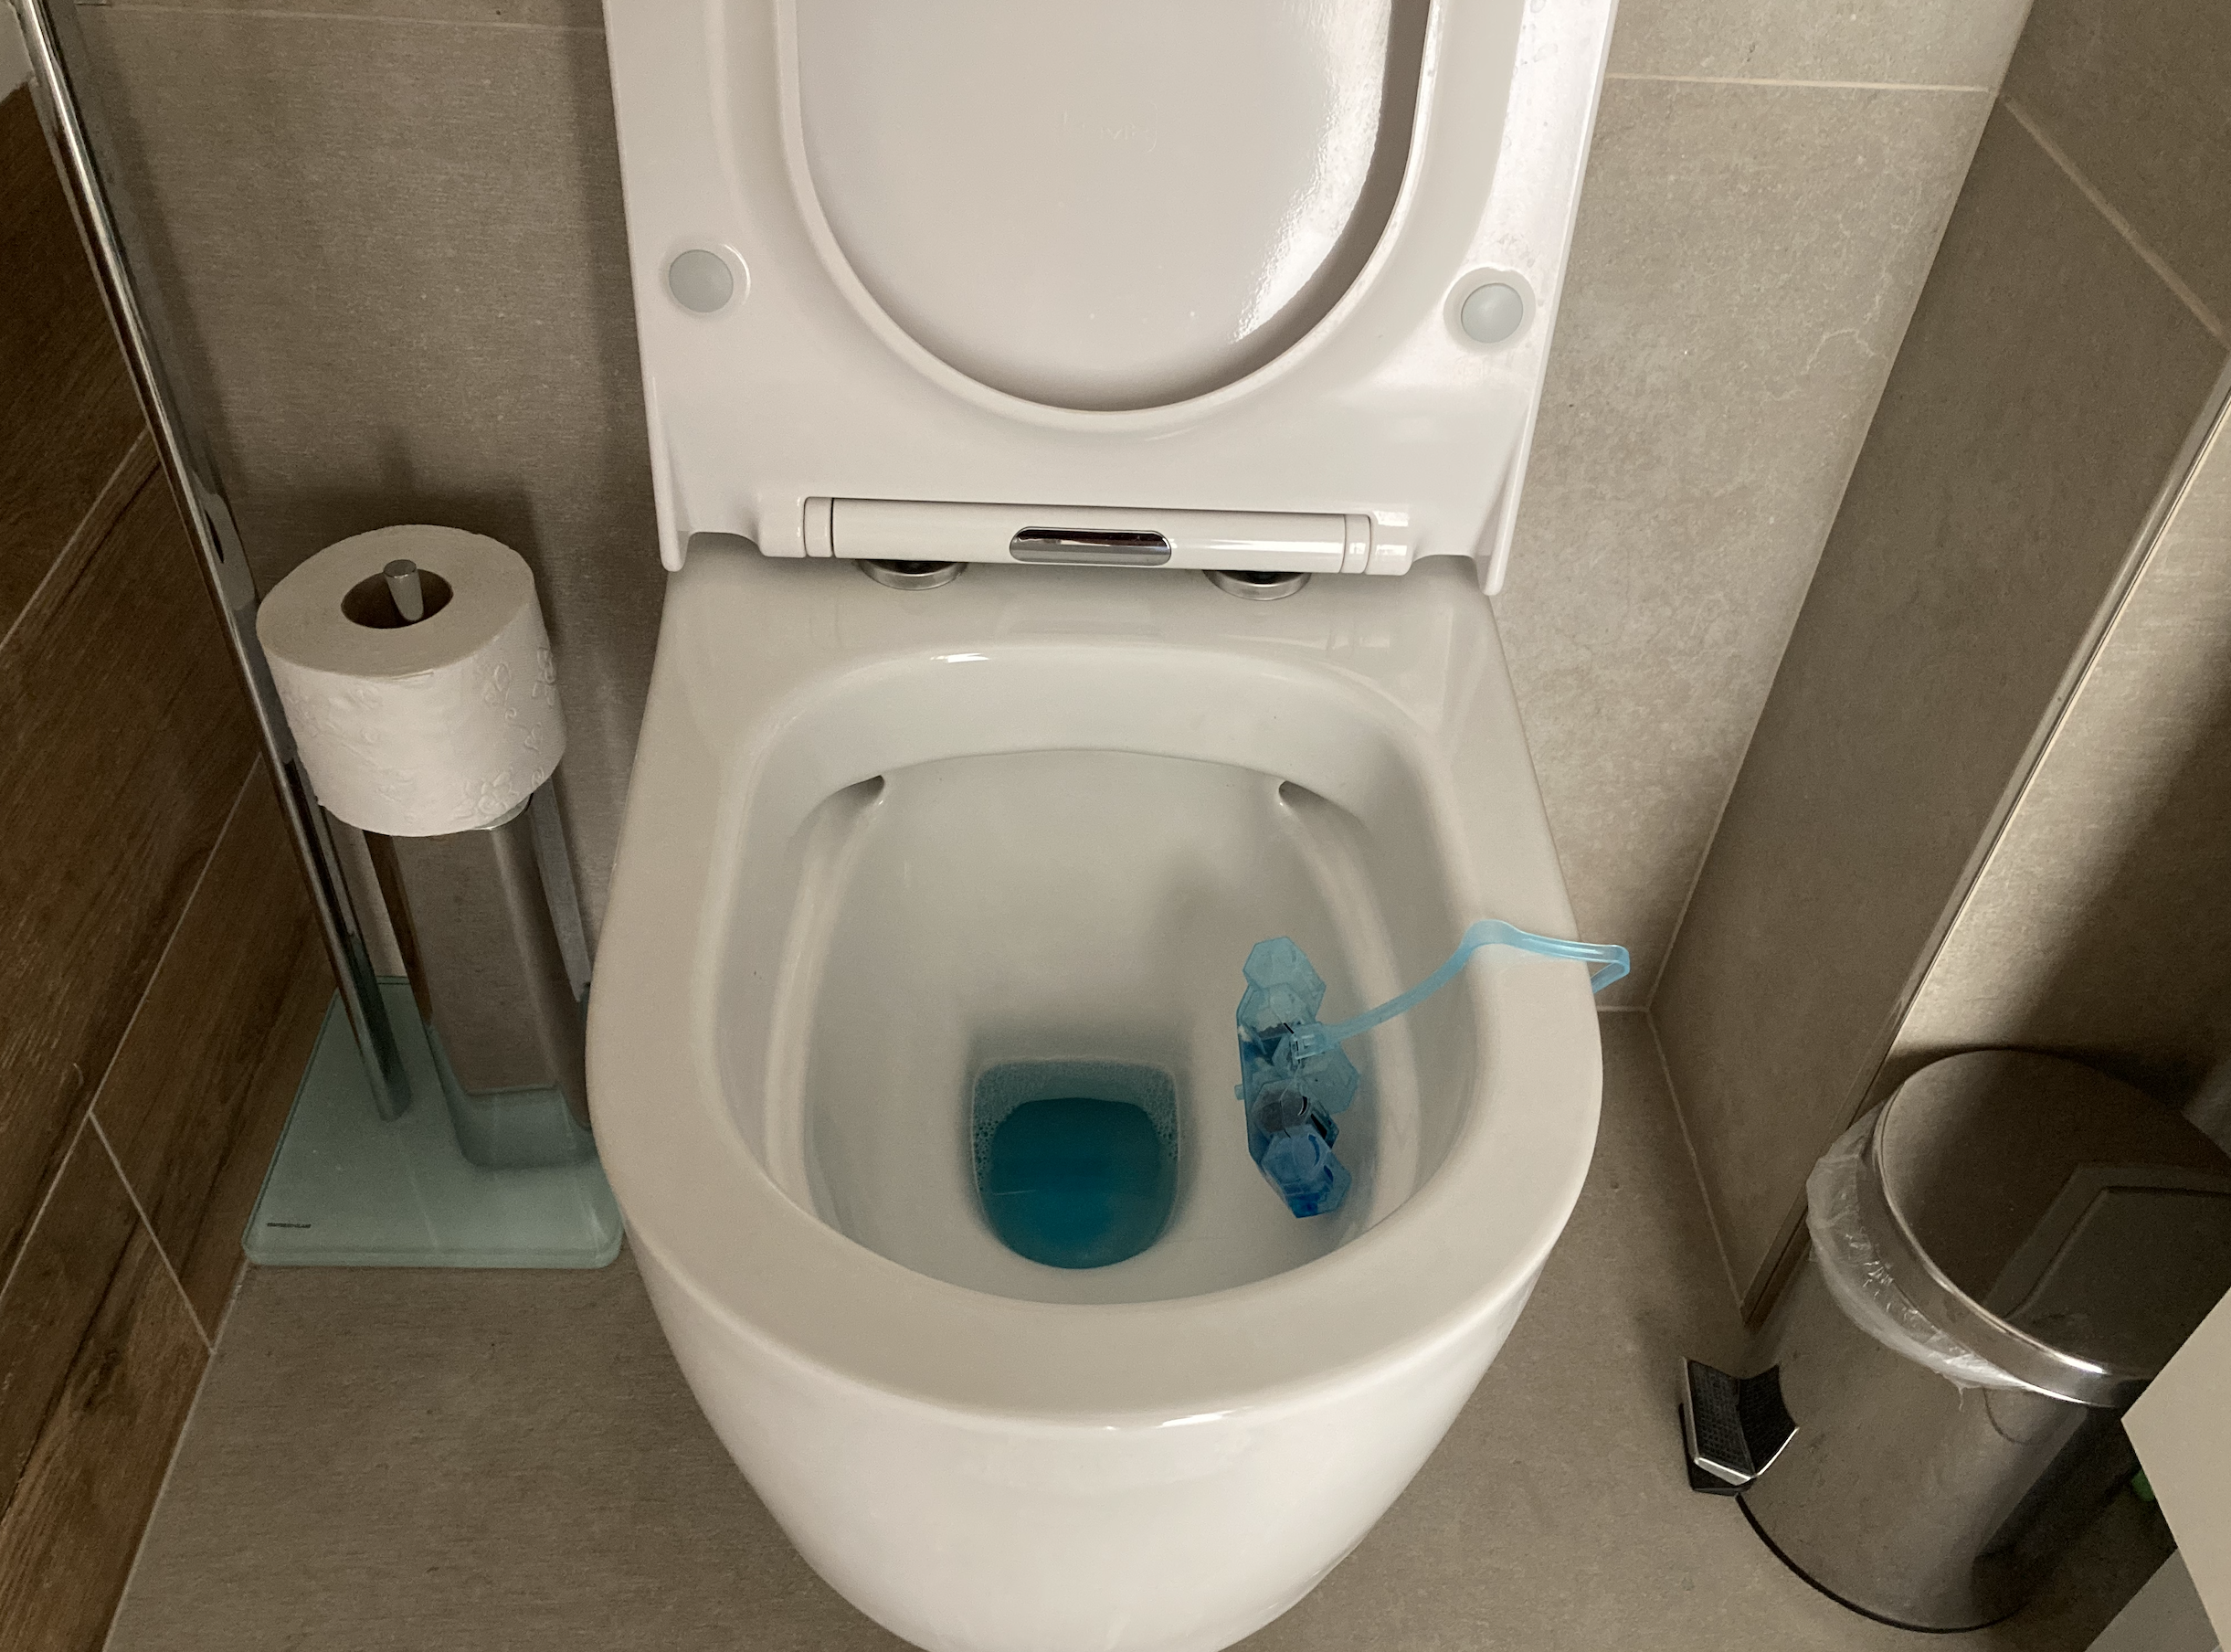 Motivul pentru care trebuie să puneți sare în toaletă este cunoscut doar de gospodinele experimentate: acum o veți face în mod regulat!